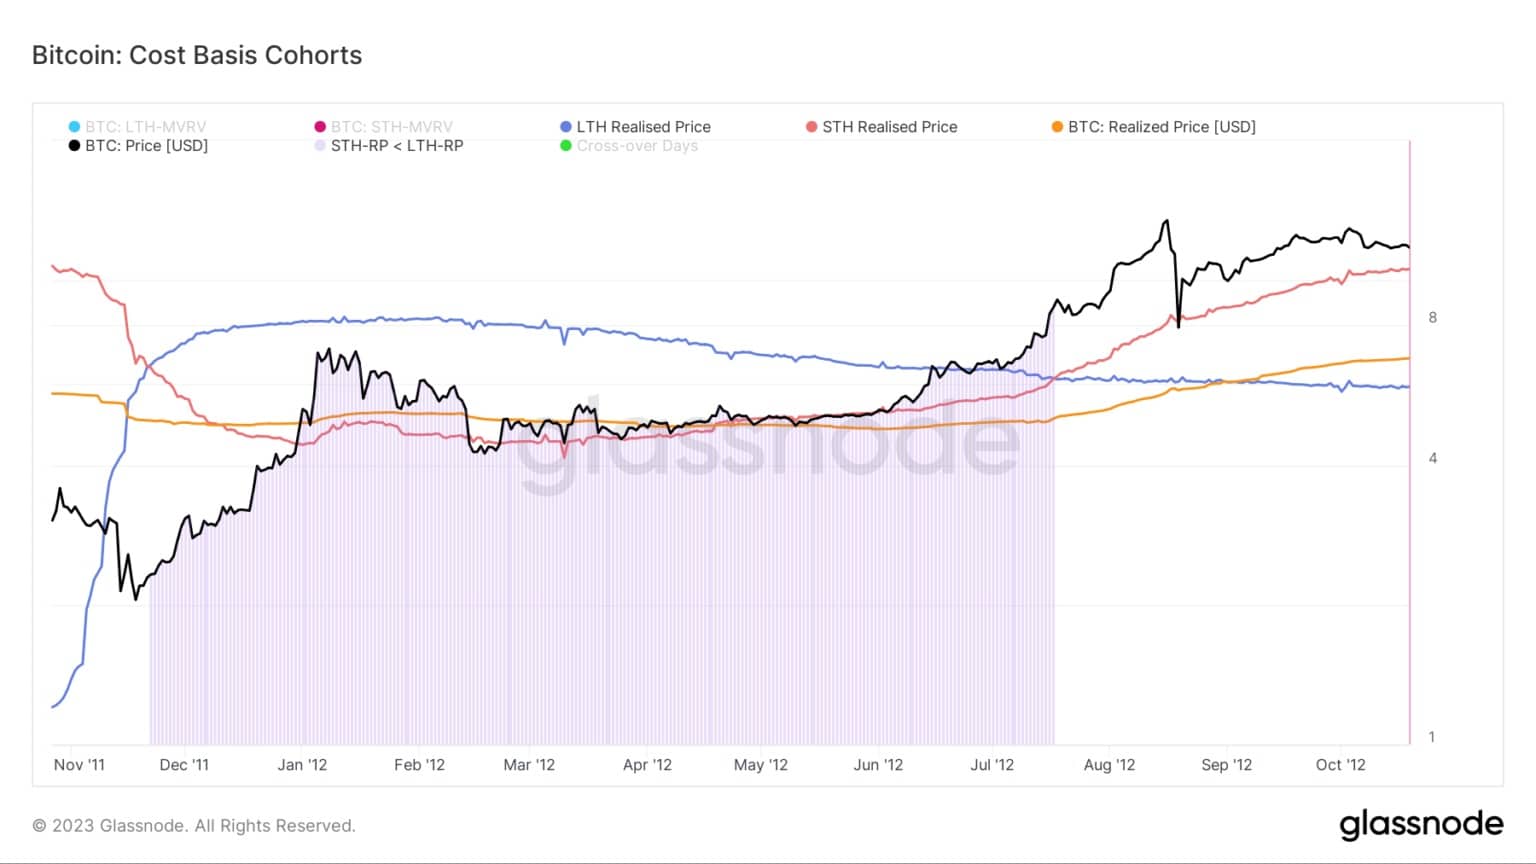 Grafico che mostra il costo-base per le coorti di Bitcoin durante il mercato orso del 2011/2012 (Fonte: Glassnode)